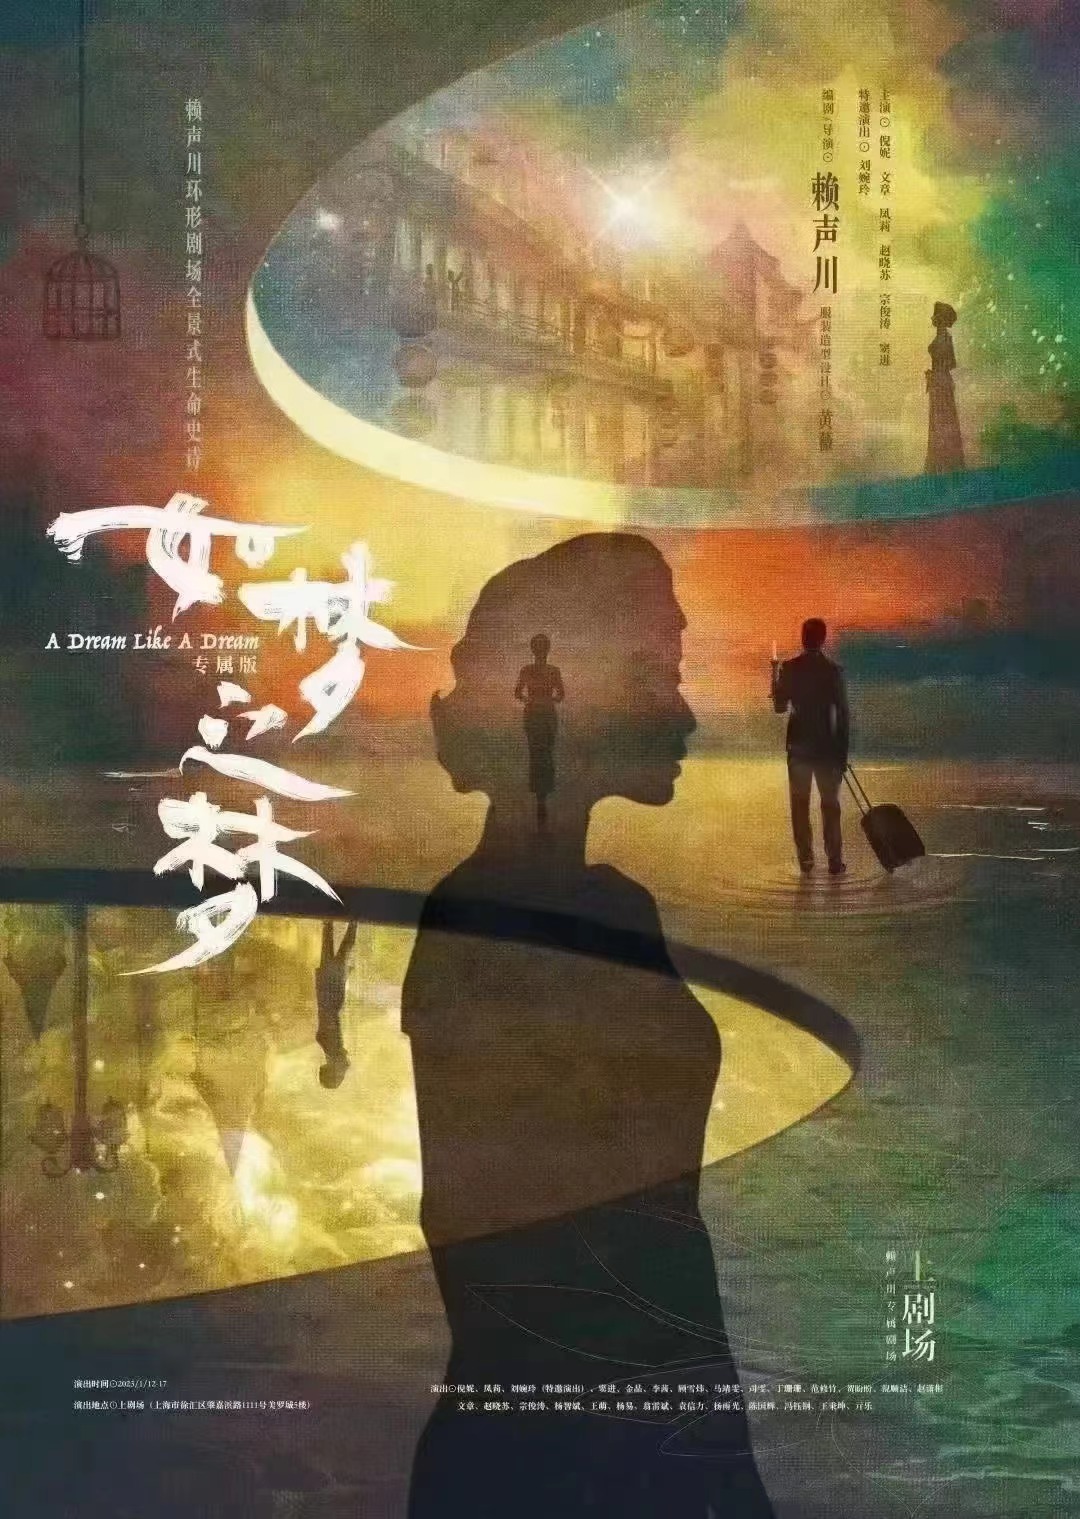 2023话剧《如梦之梦》上海站演出详情、订票信息